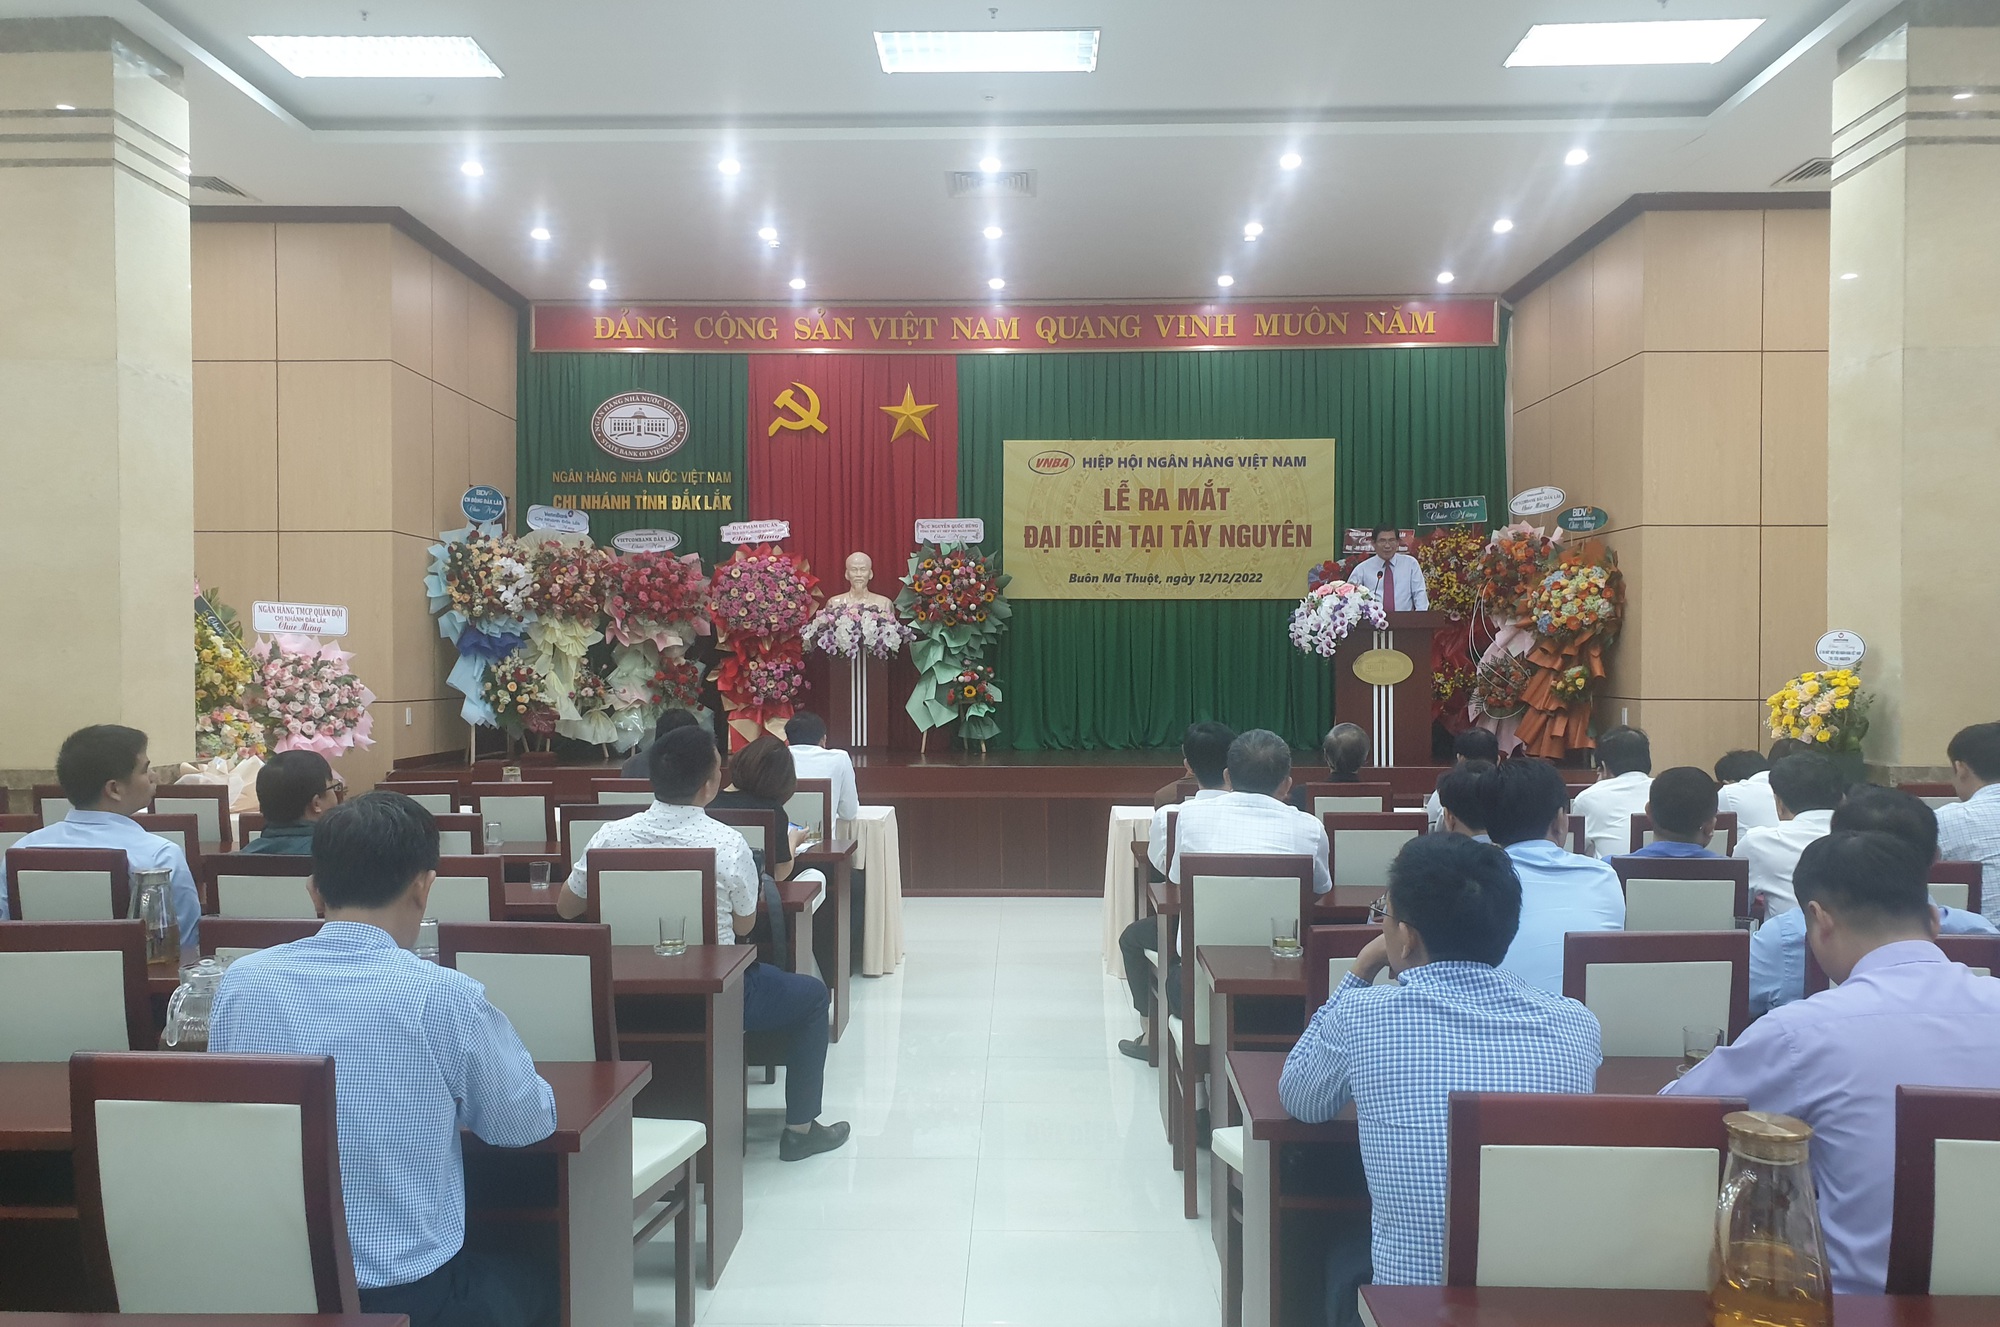 Hiệp hội Ngân hàng Việt Nam ra mắt đại diện tại Tây Nguyên  - Ảnh 1.